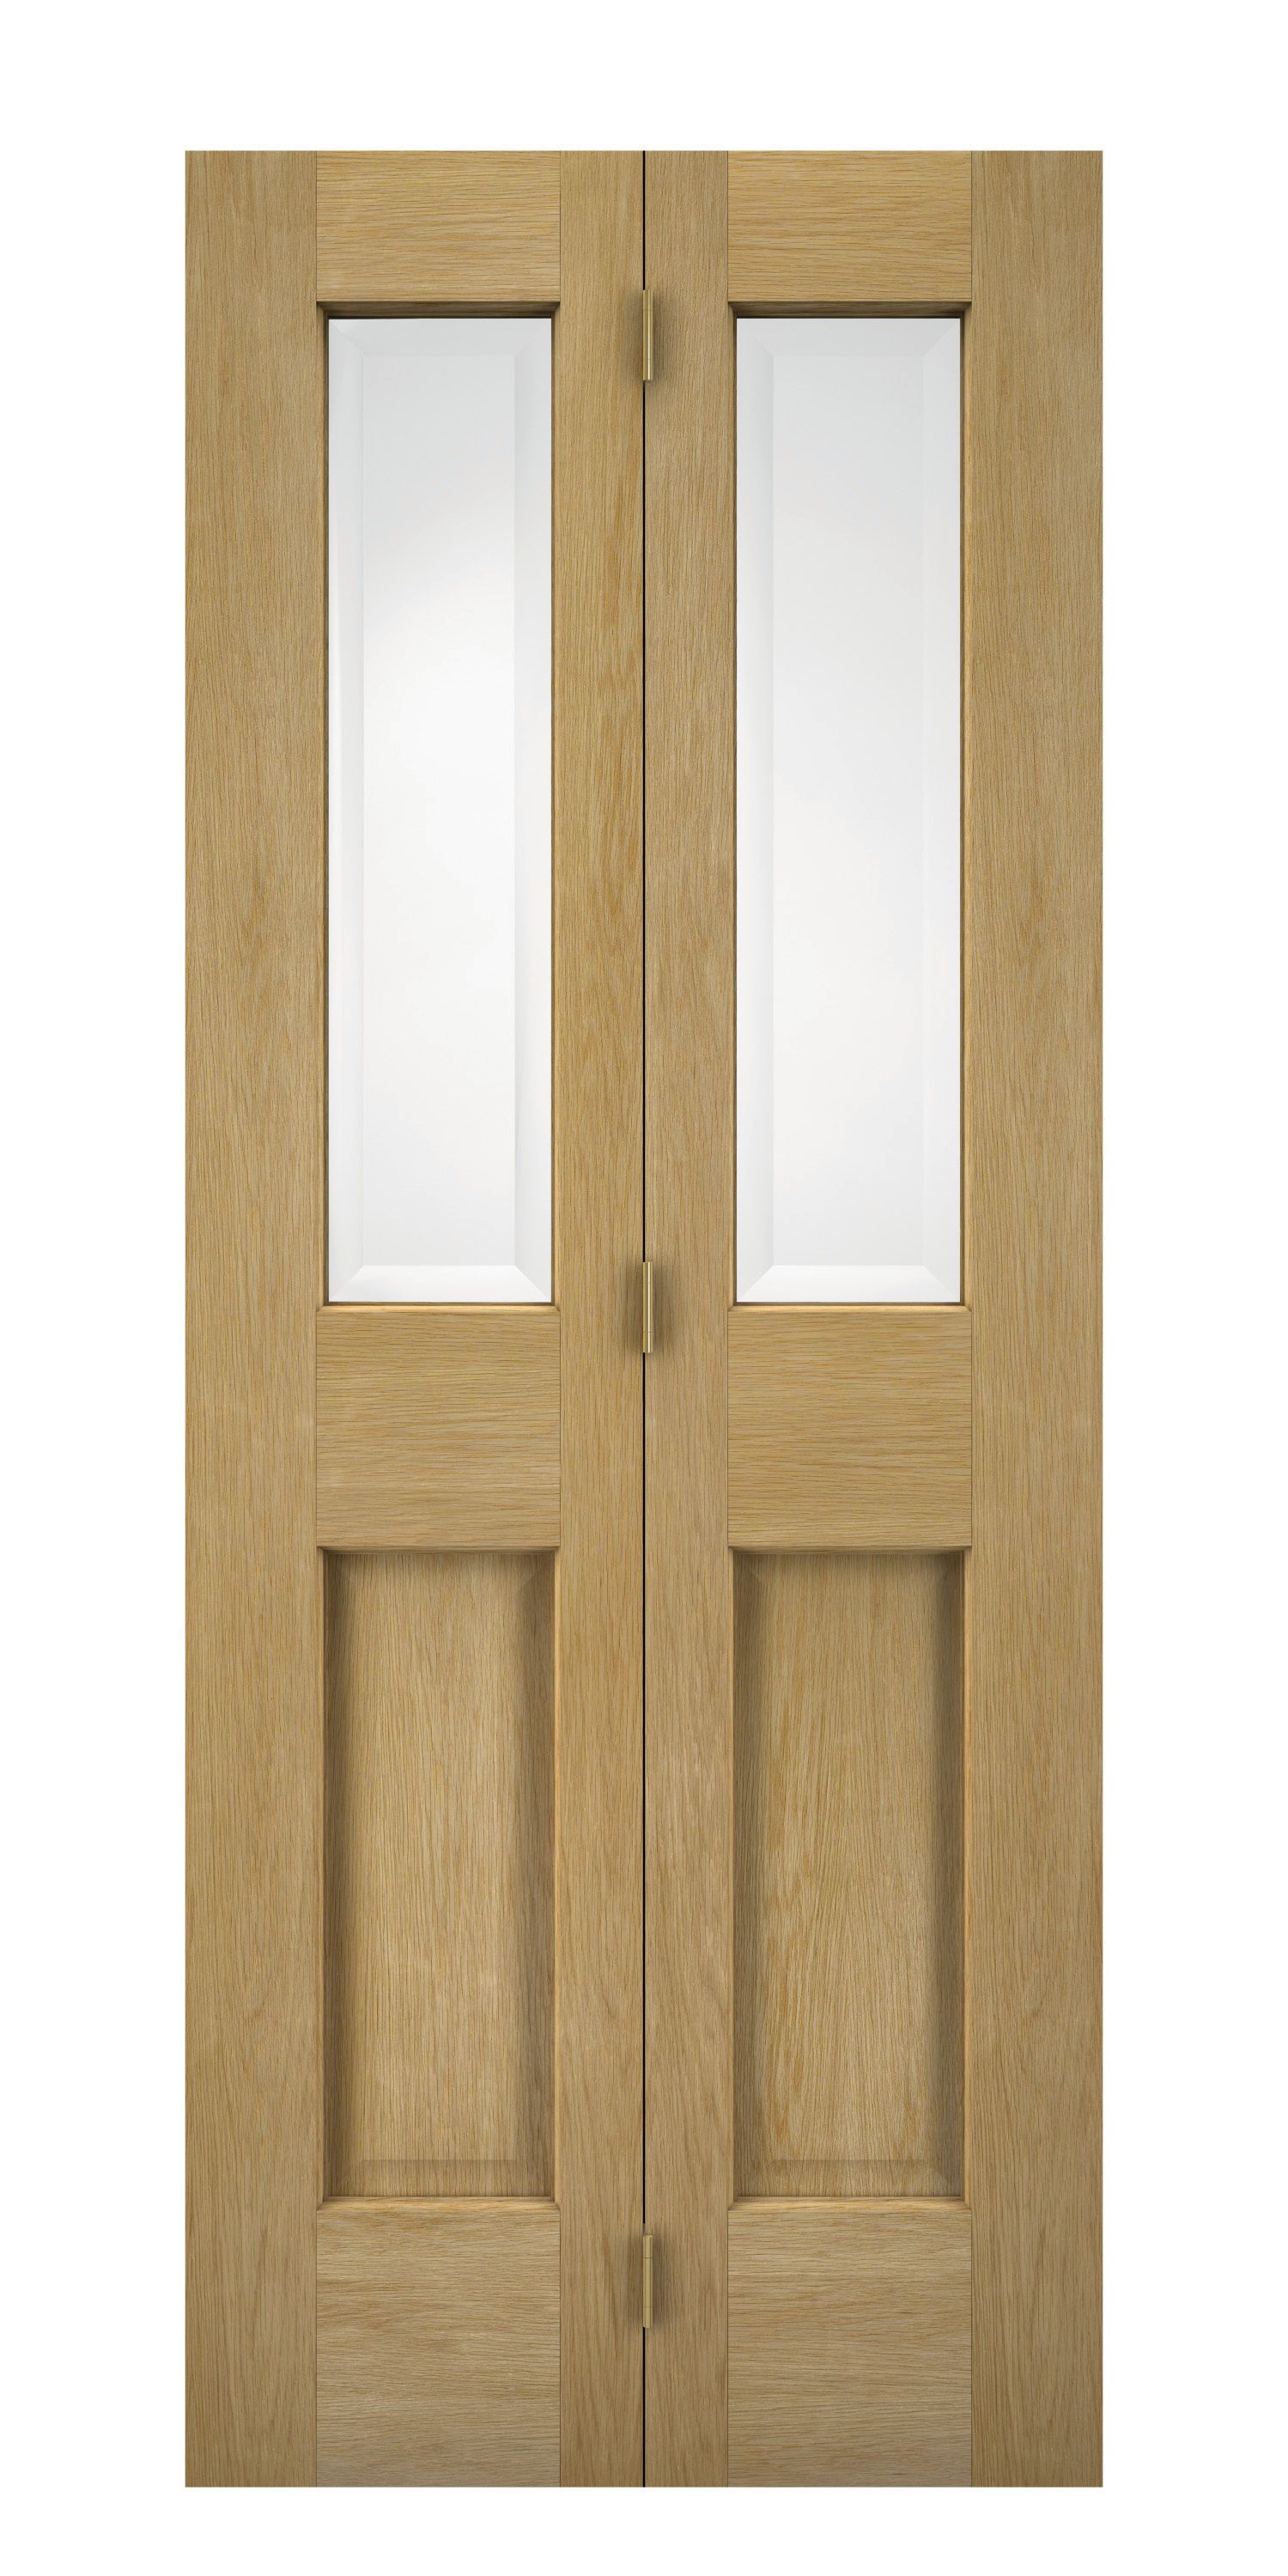 Wickes Cobham Glazed Oak 4 Panel Internal Bi-Fold